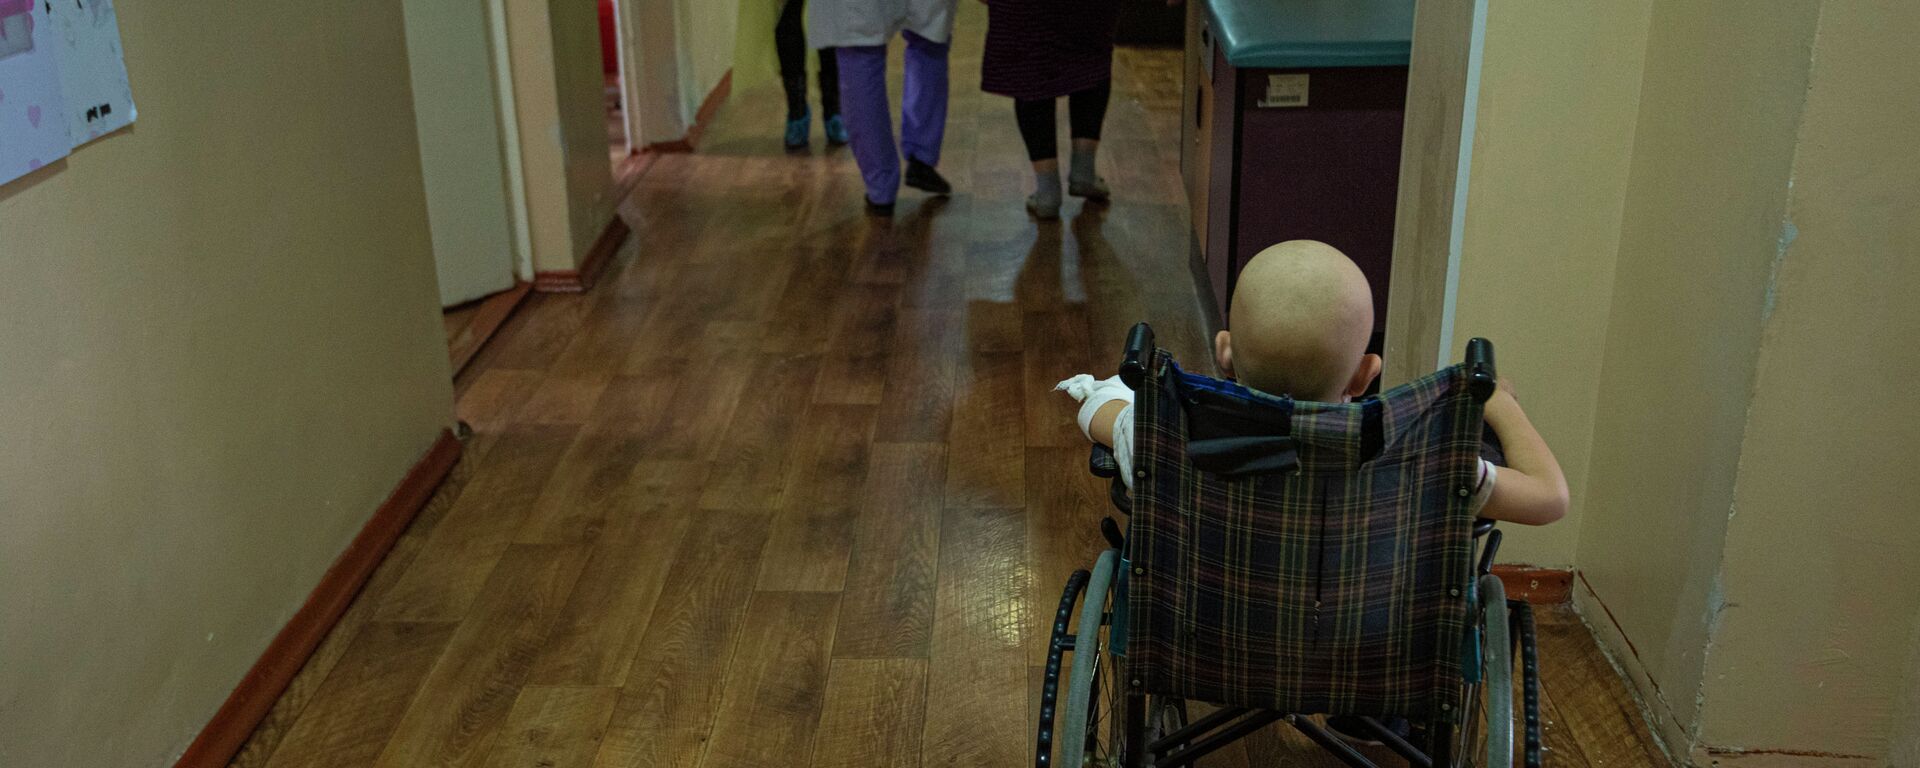 Ребенок в инвалидной коляске в детском отделении Национального центра онкологии и гематологии в Бишкеке - Sputnik Кыргызстан, 1920, 15.02.2020